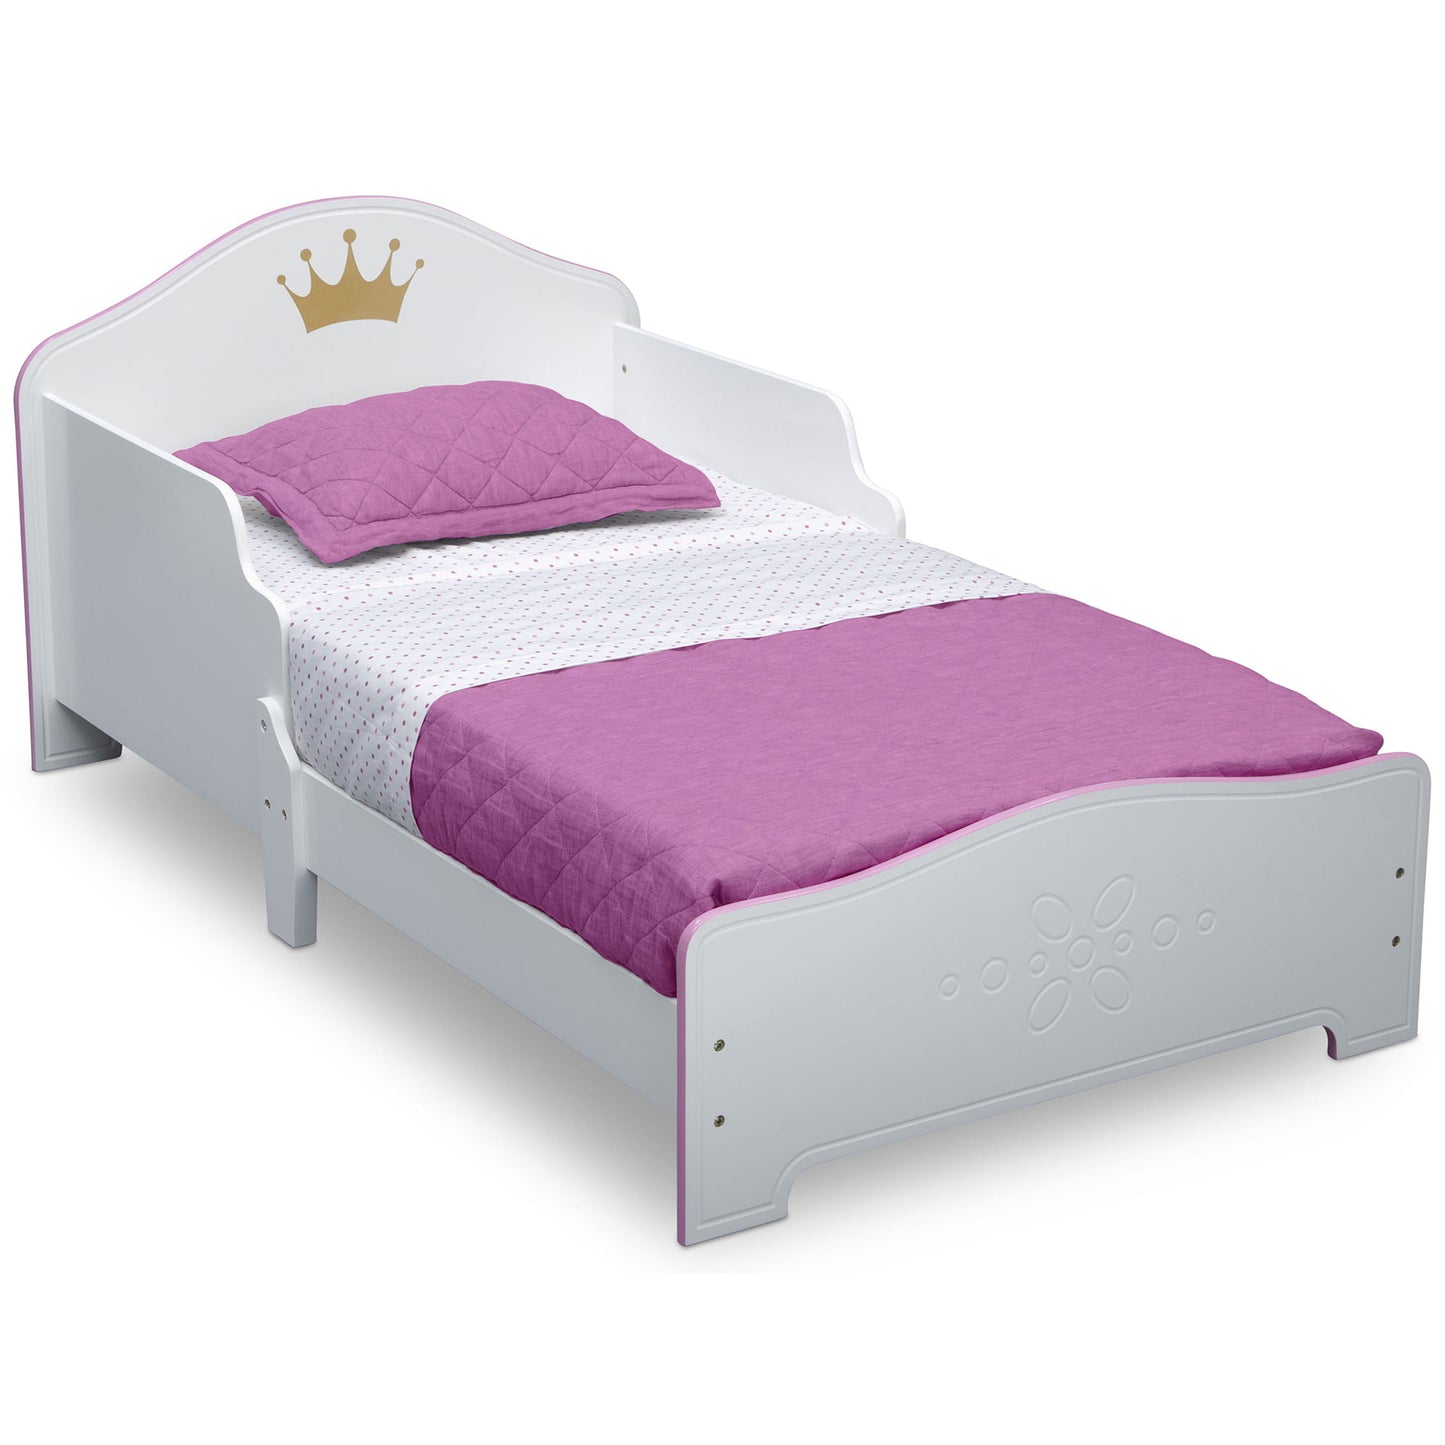 Delta Children Princess Crown Wood Toddler Bed, Greenguard Gold Certified, White/Pink  Bedroom Set  Muebles  Furniture Bedroom